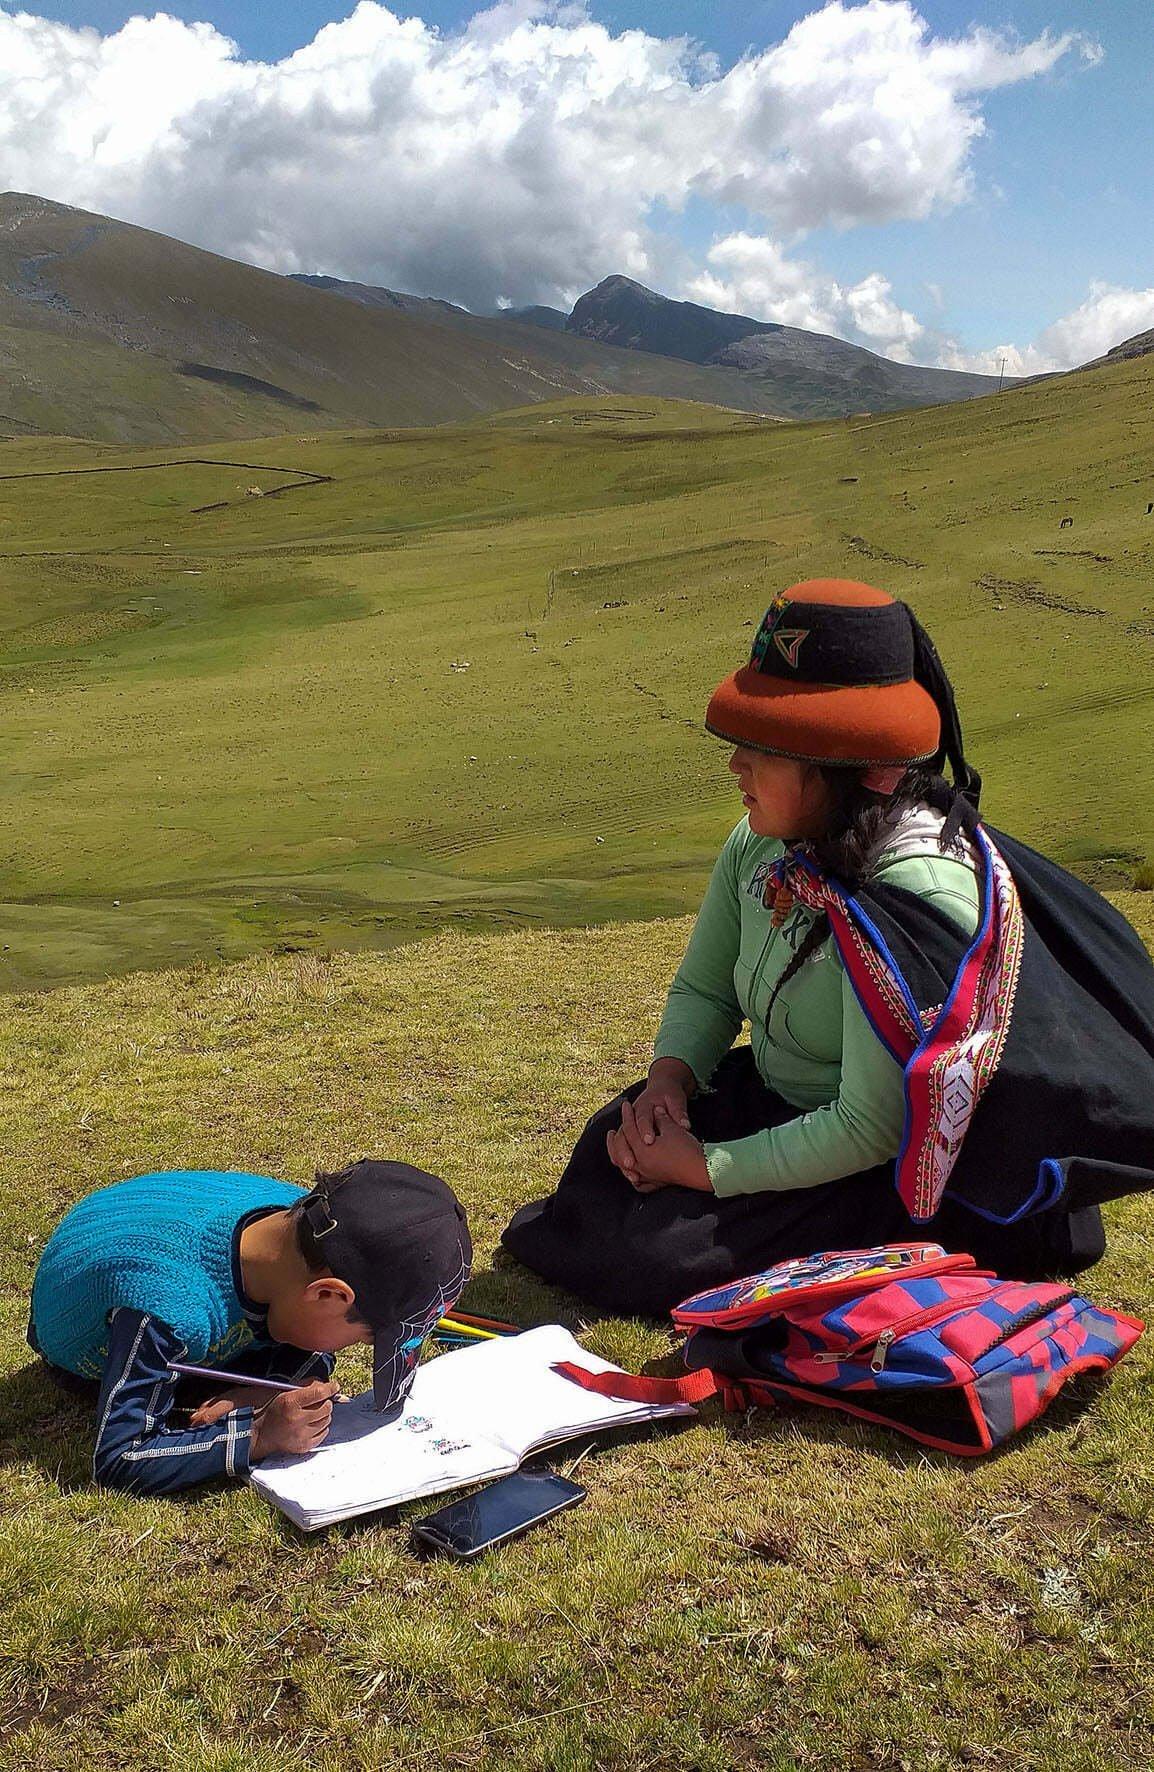 Eine Mutter und ihr Kind sitzen in einer weitern gebirgigen Graslandschaft, das Kind macht Hausaufgaben.